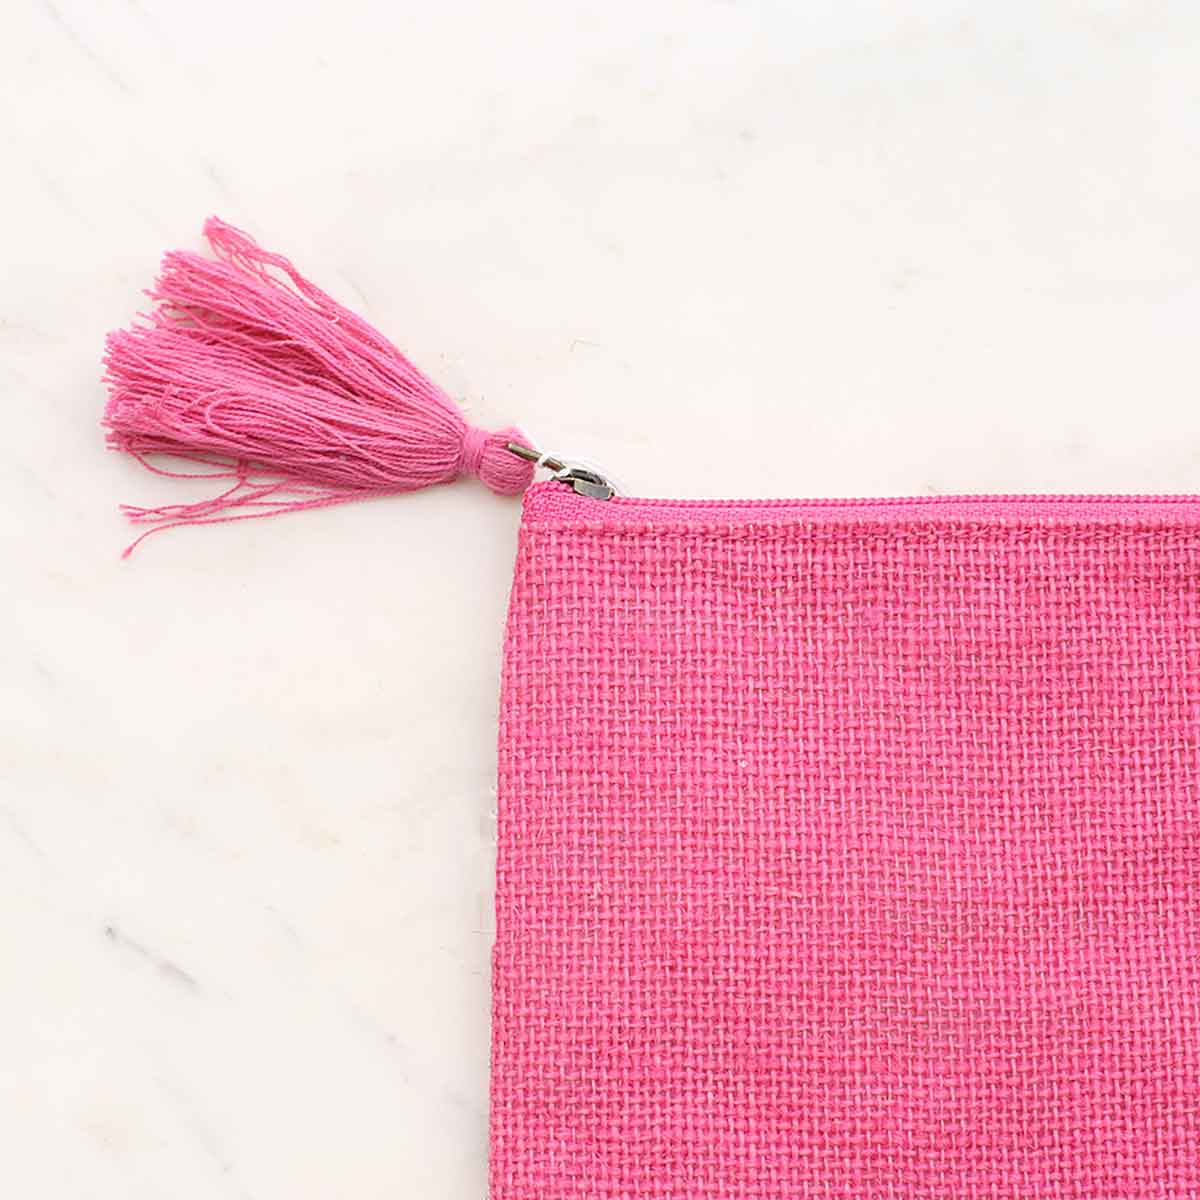 Jute Cosmetic Bag   Hot Pink   10x6: Hot Pink